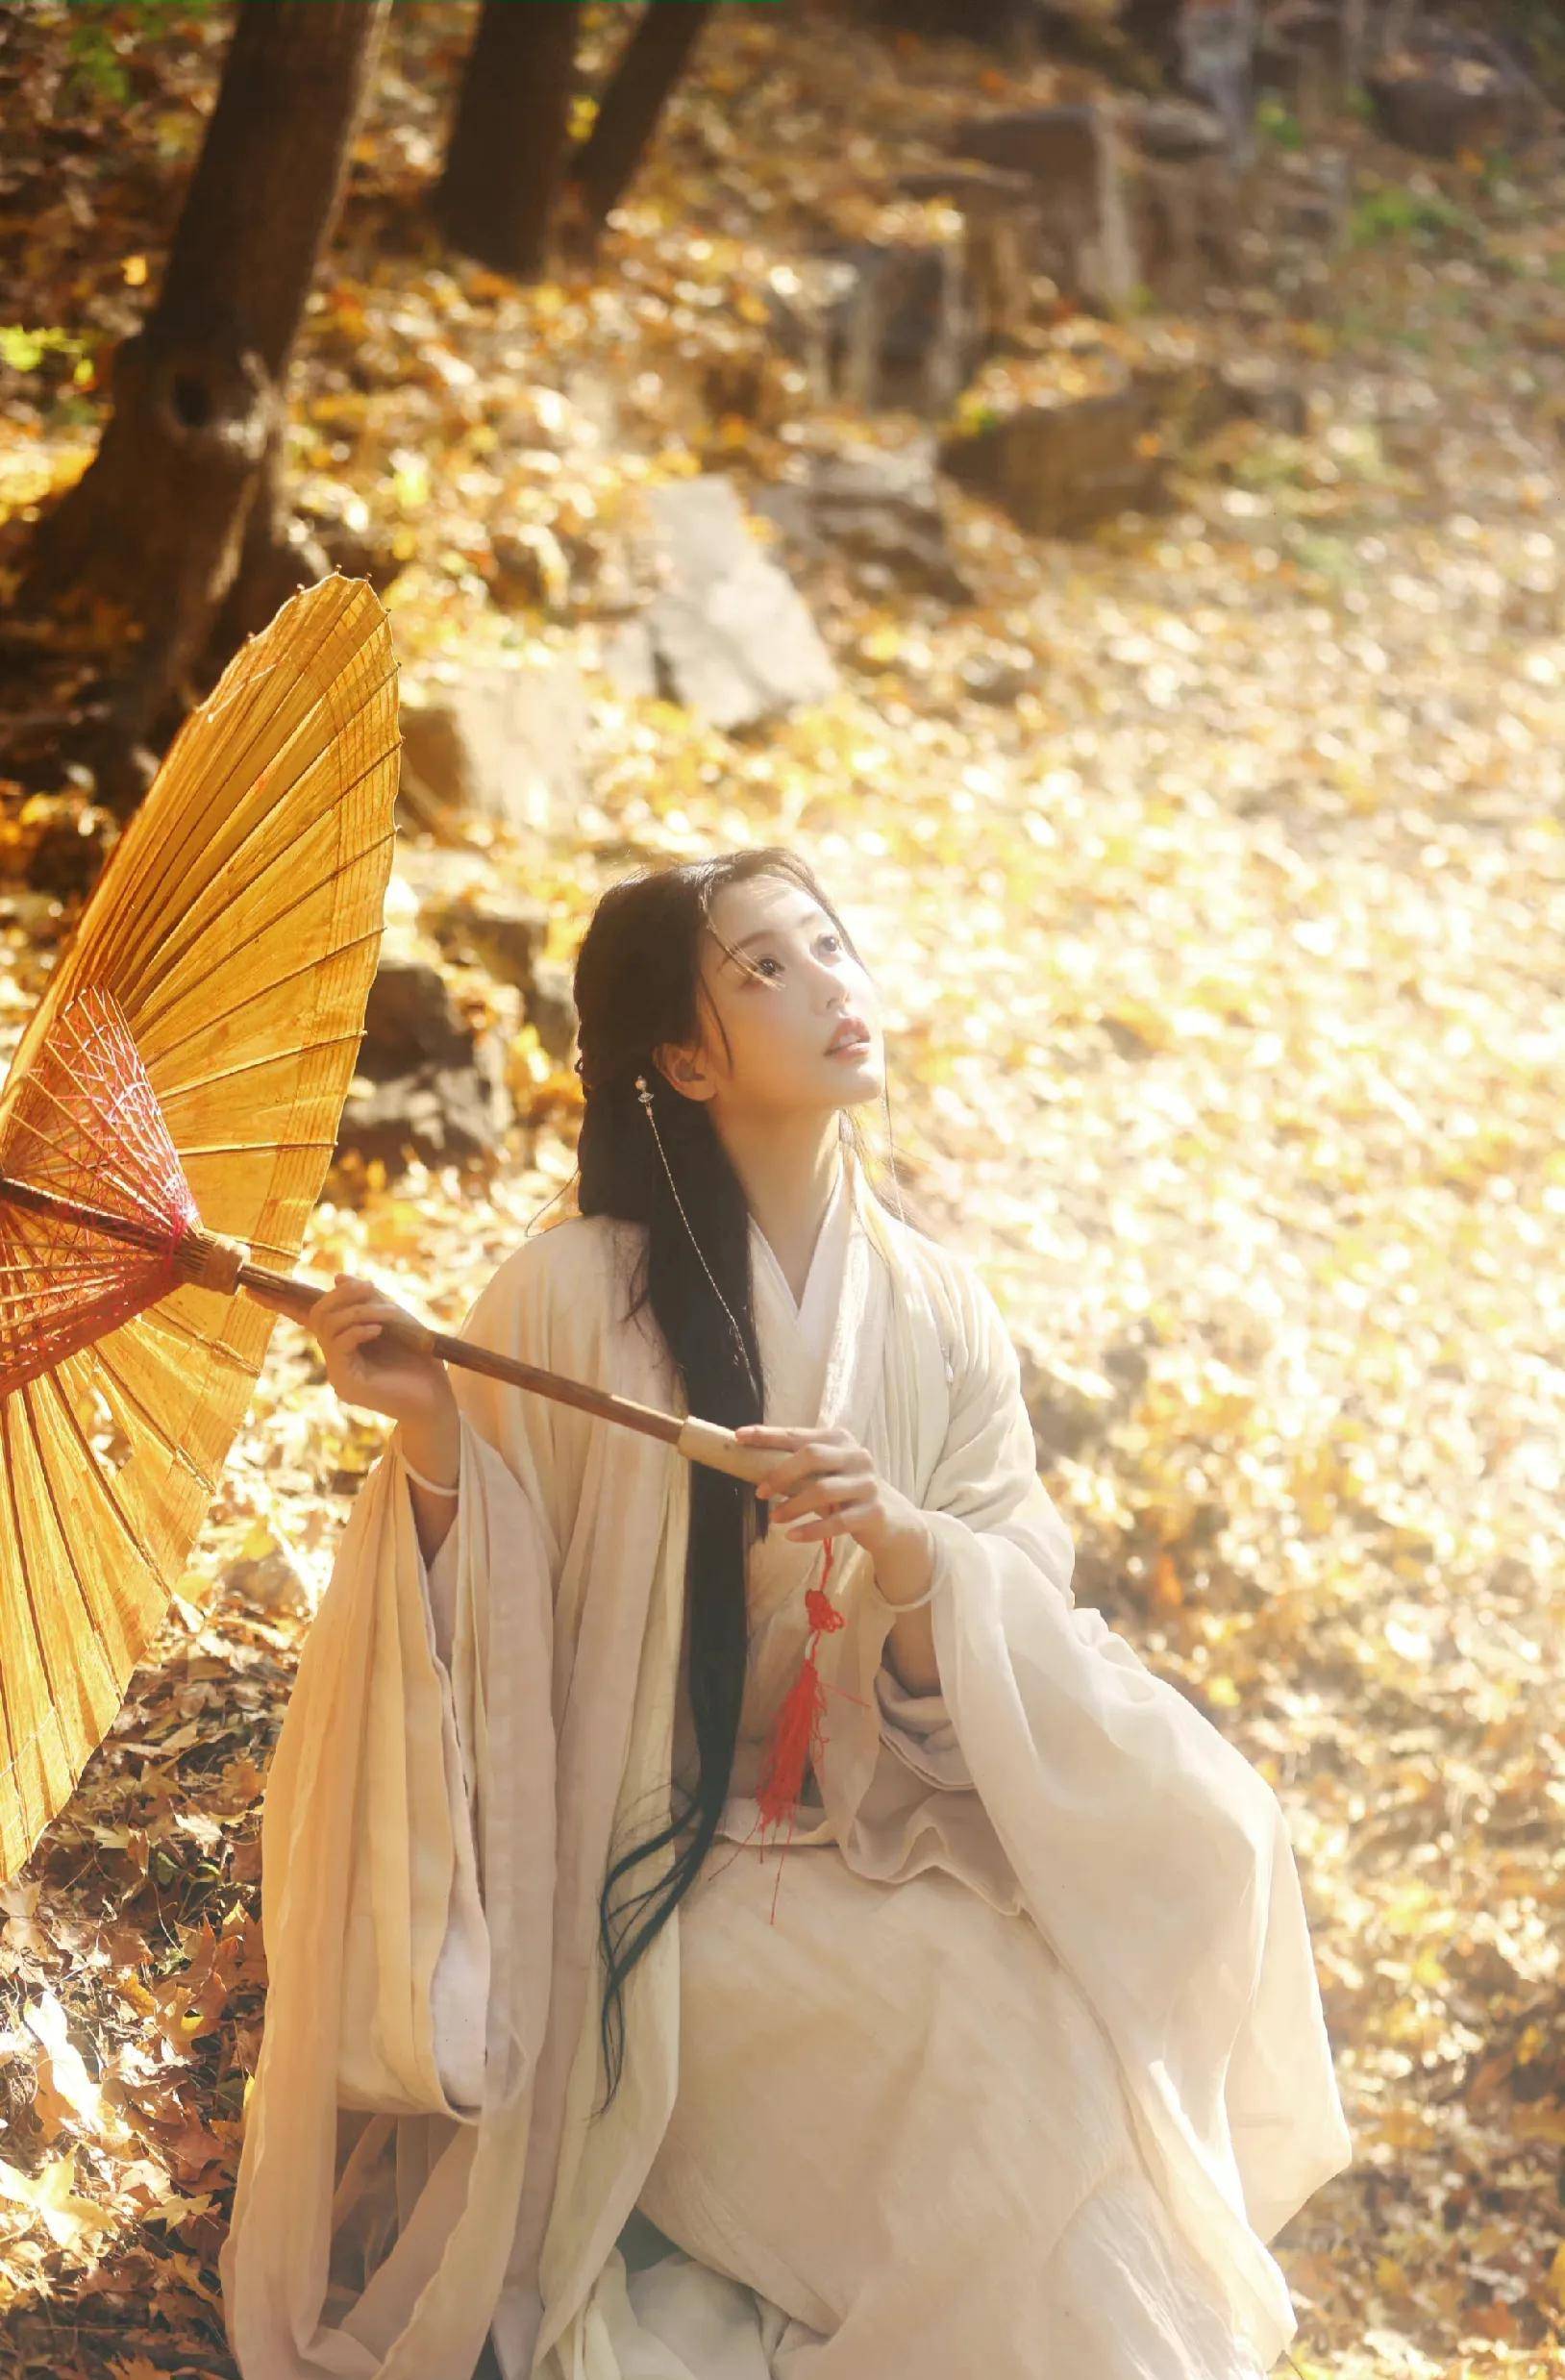 姜贞羽古风写真,撑伞执花,素雅纯净,意境朦胧唯美,氛围感满满